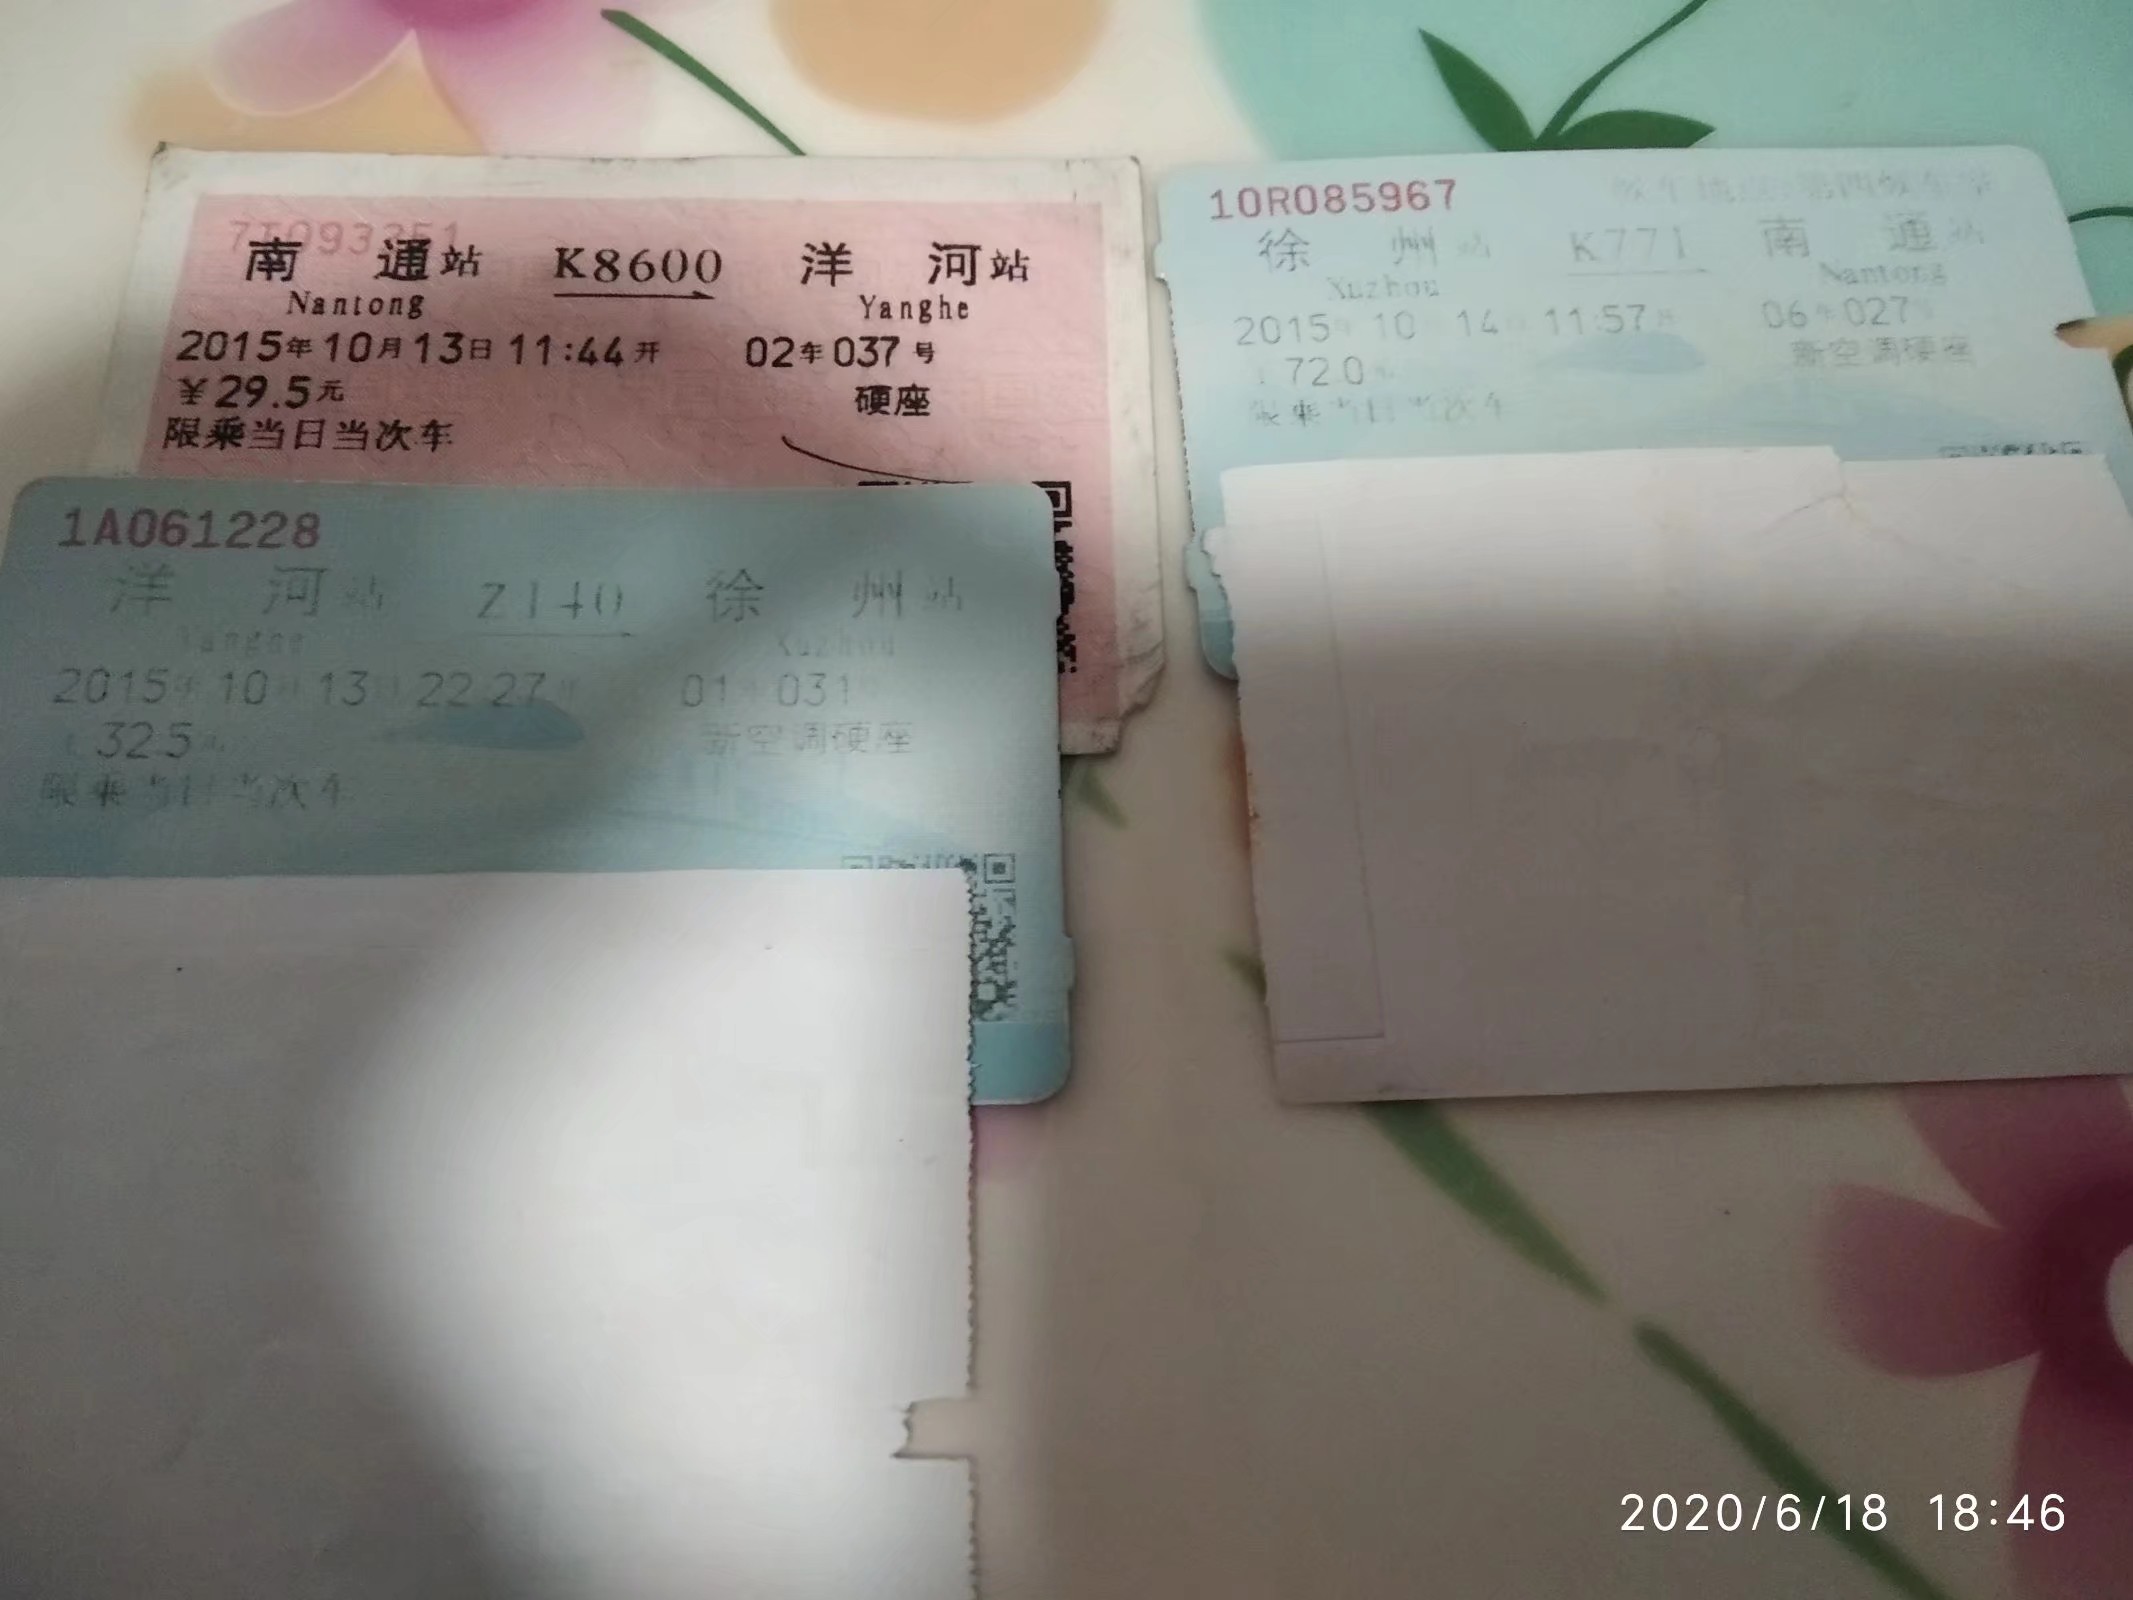 今日四川火车票价格「四川至..火车票价」